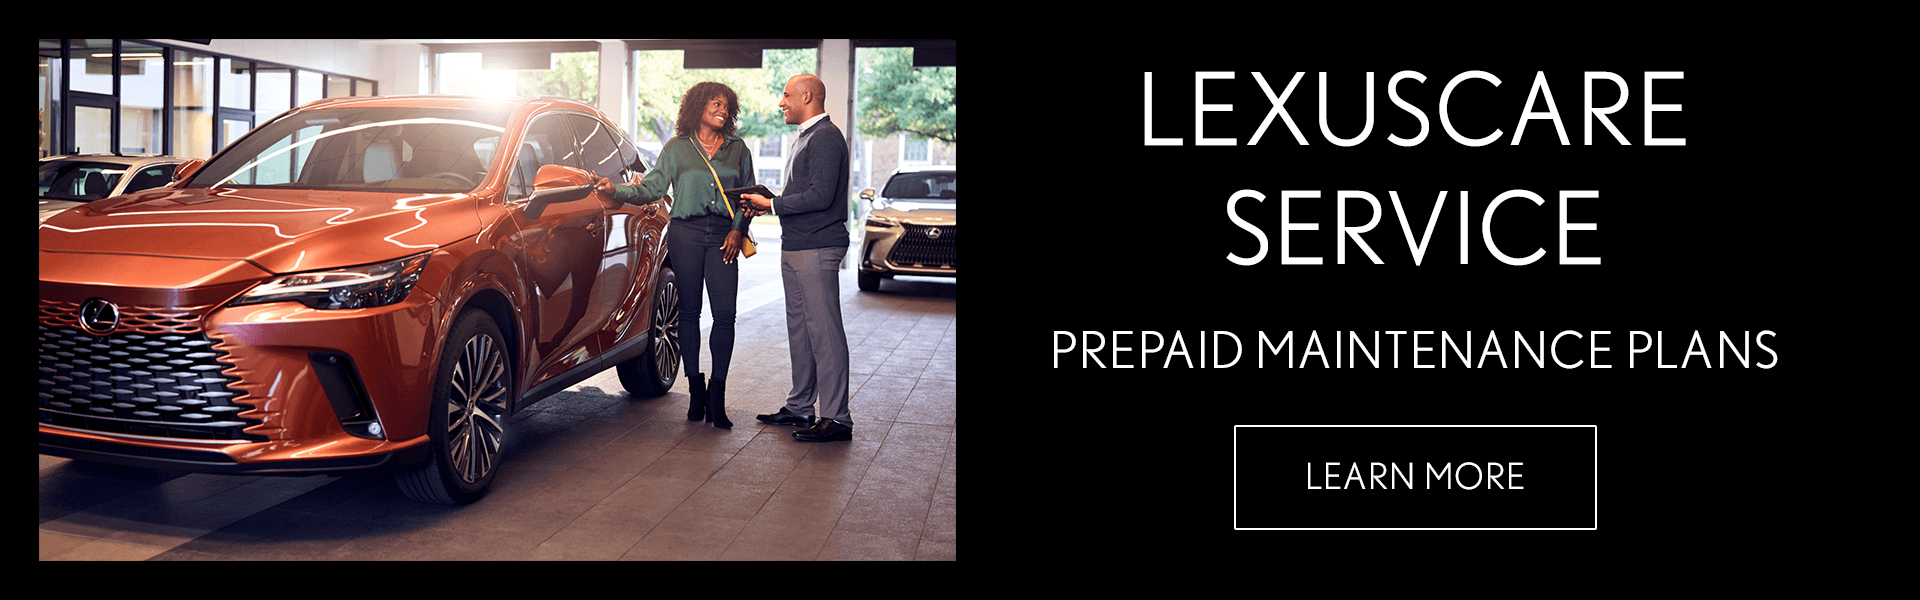 LexusCare Prepaid Plans